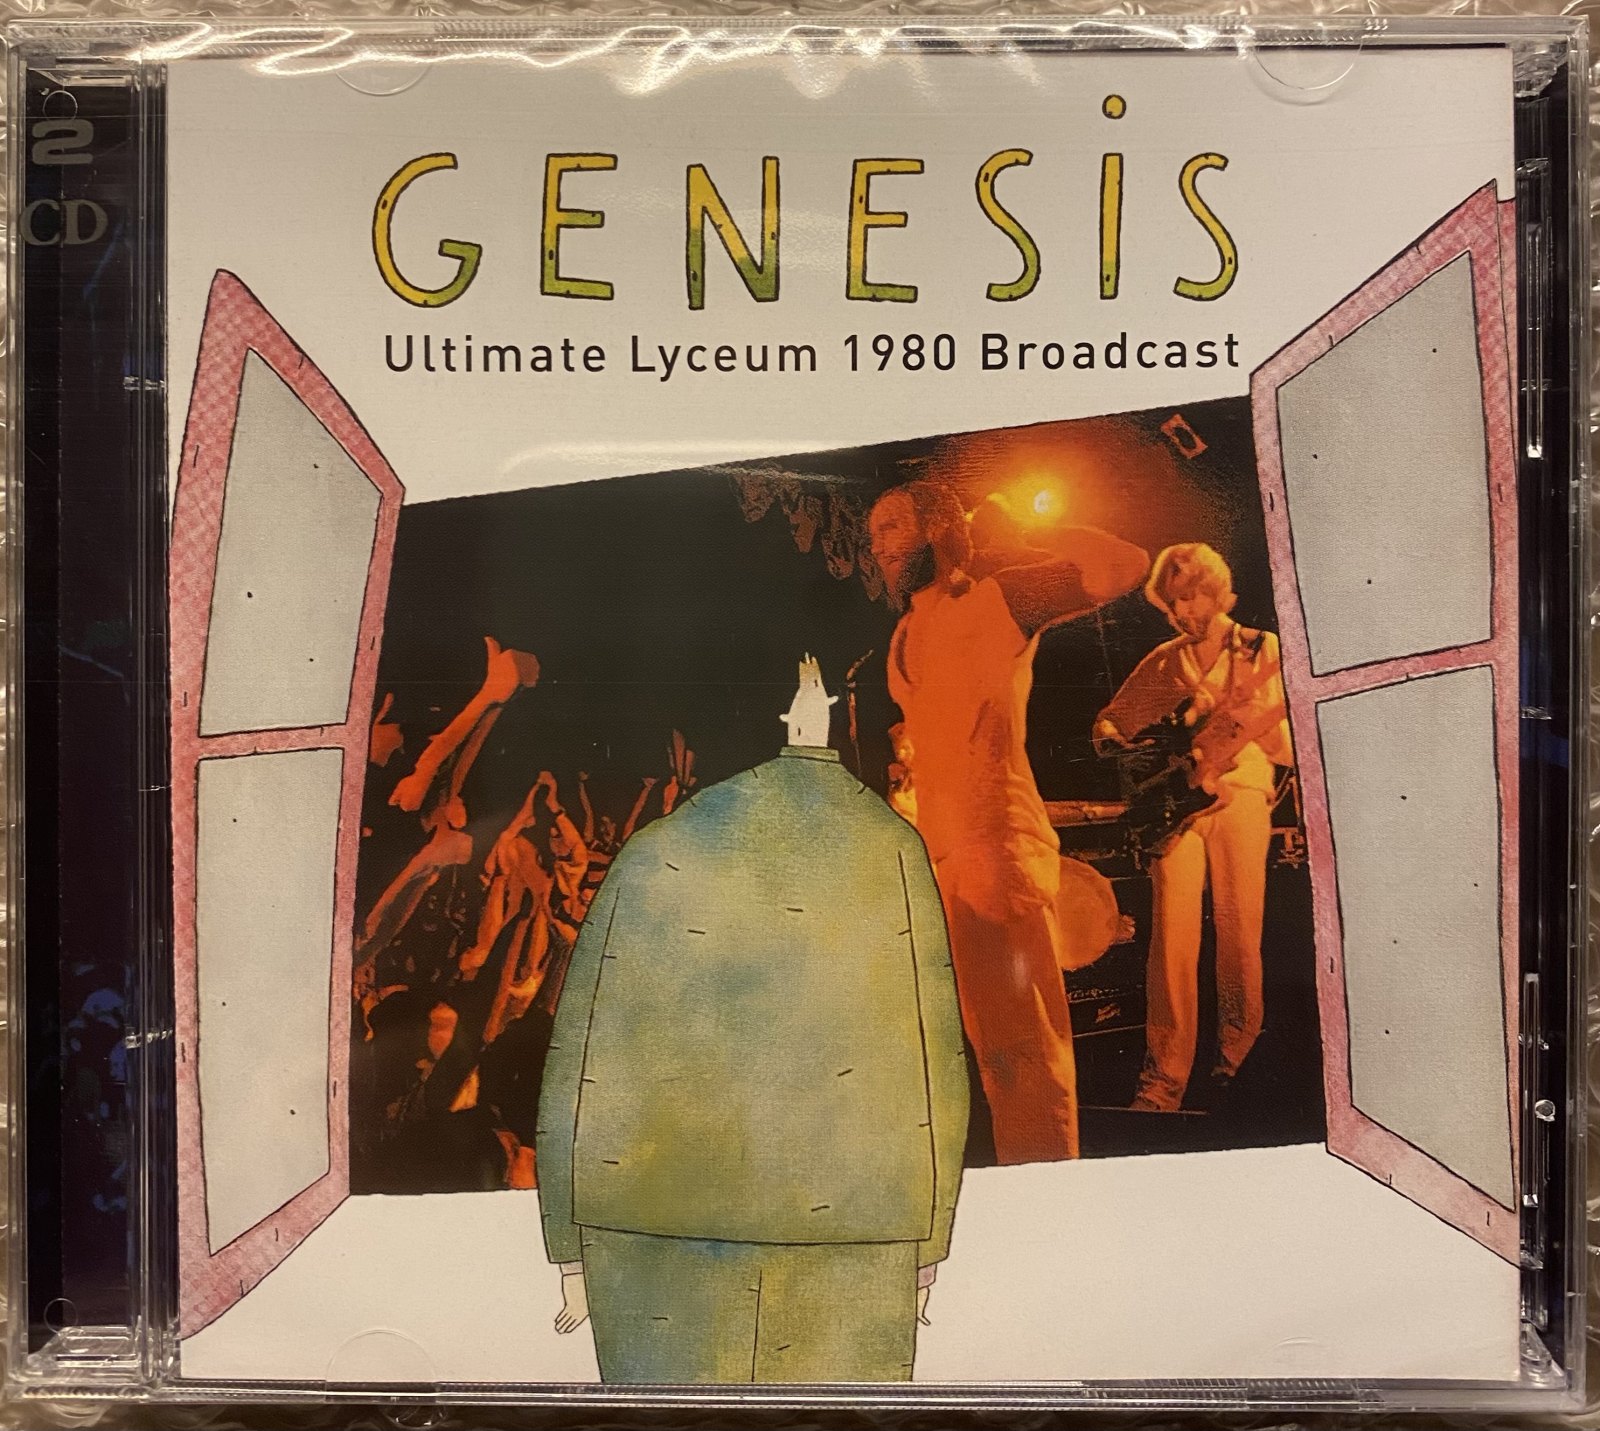 GENESIS - Ultimate Lyceum 1980 Broadcast